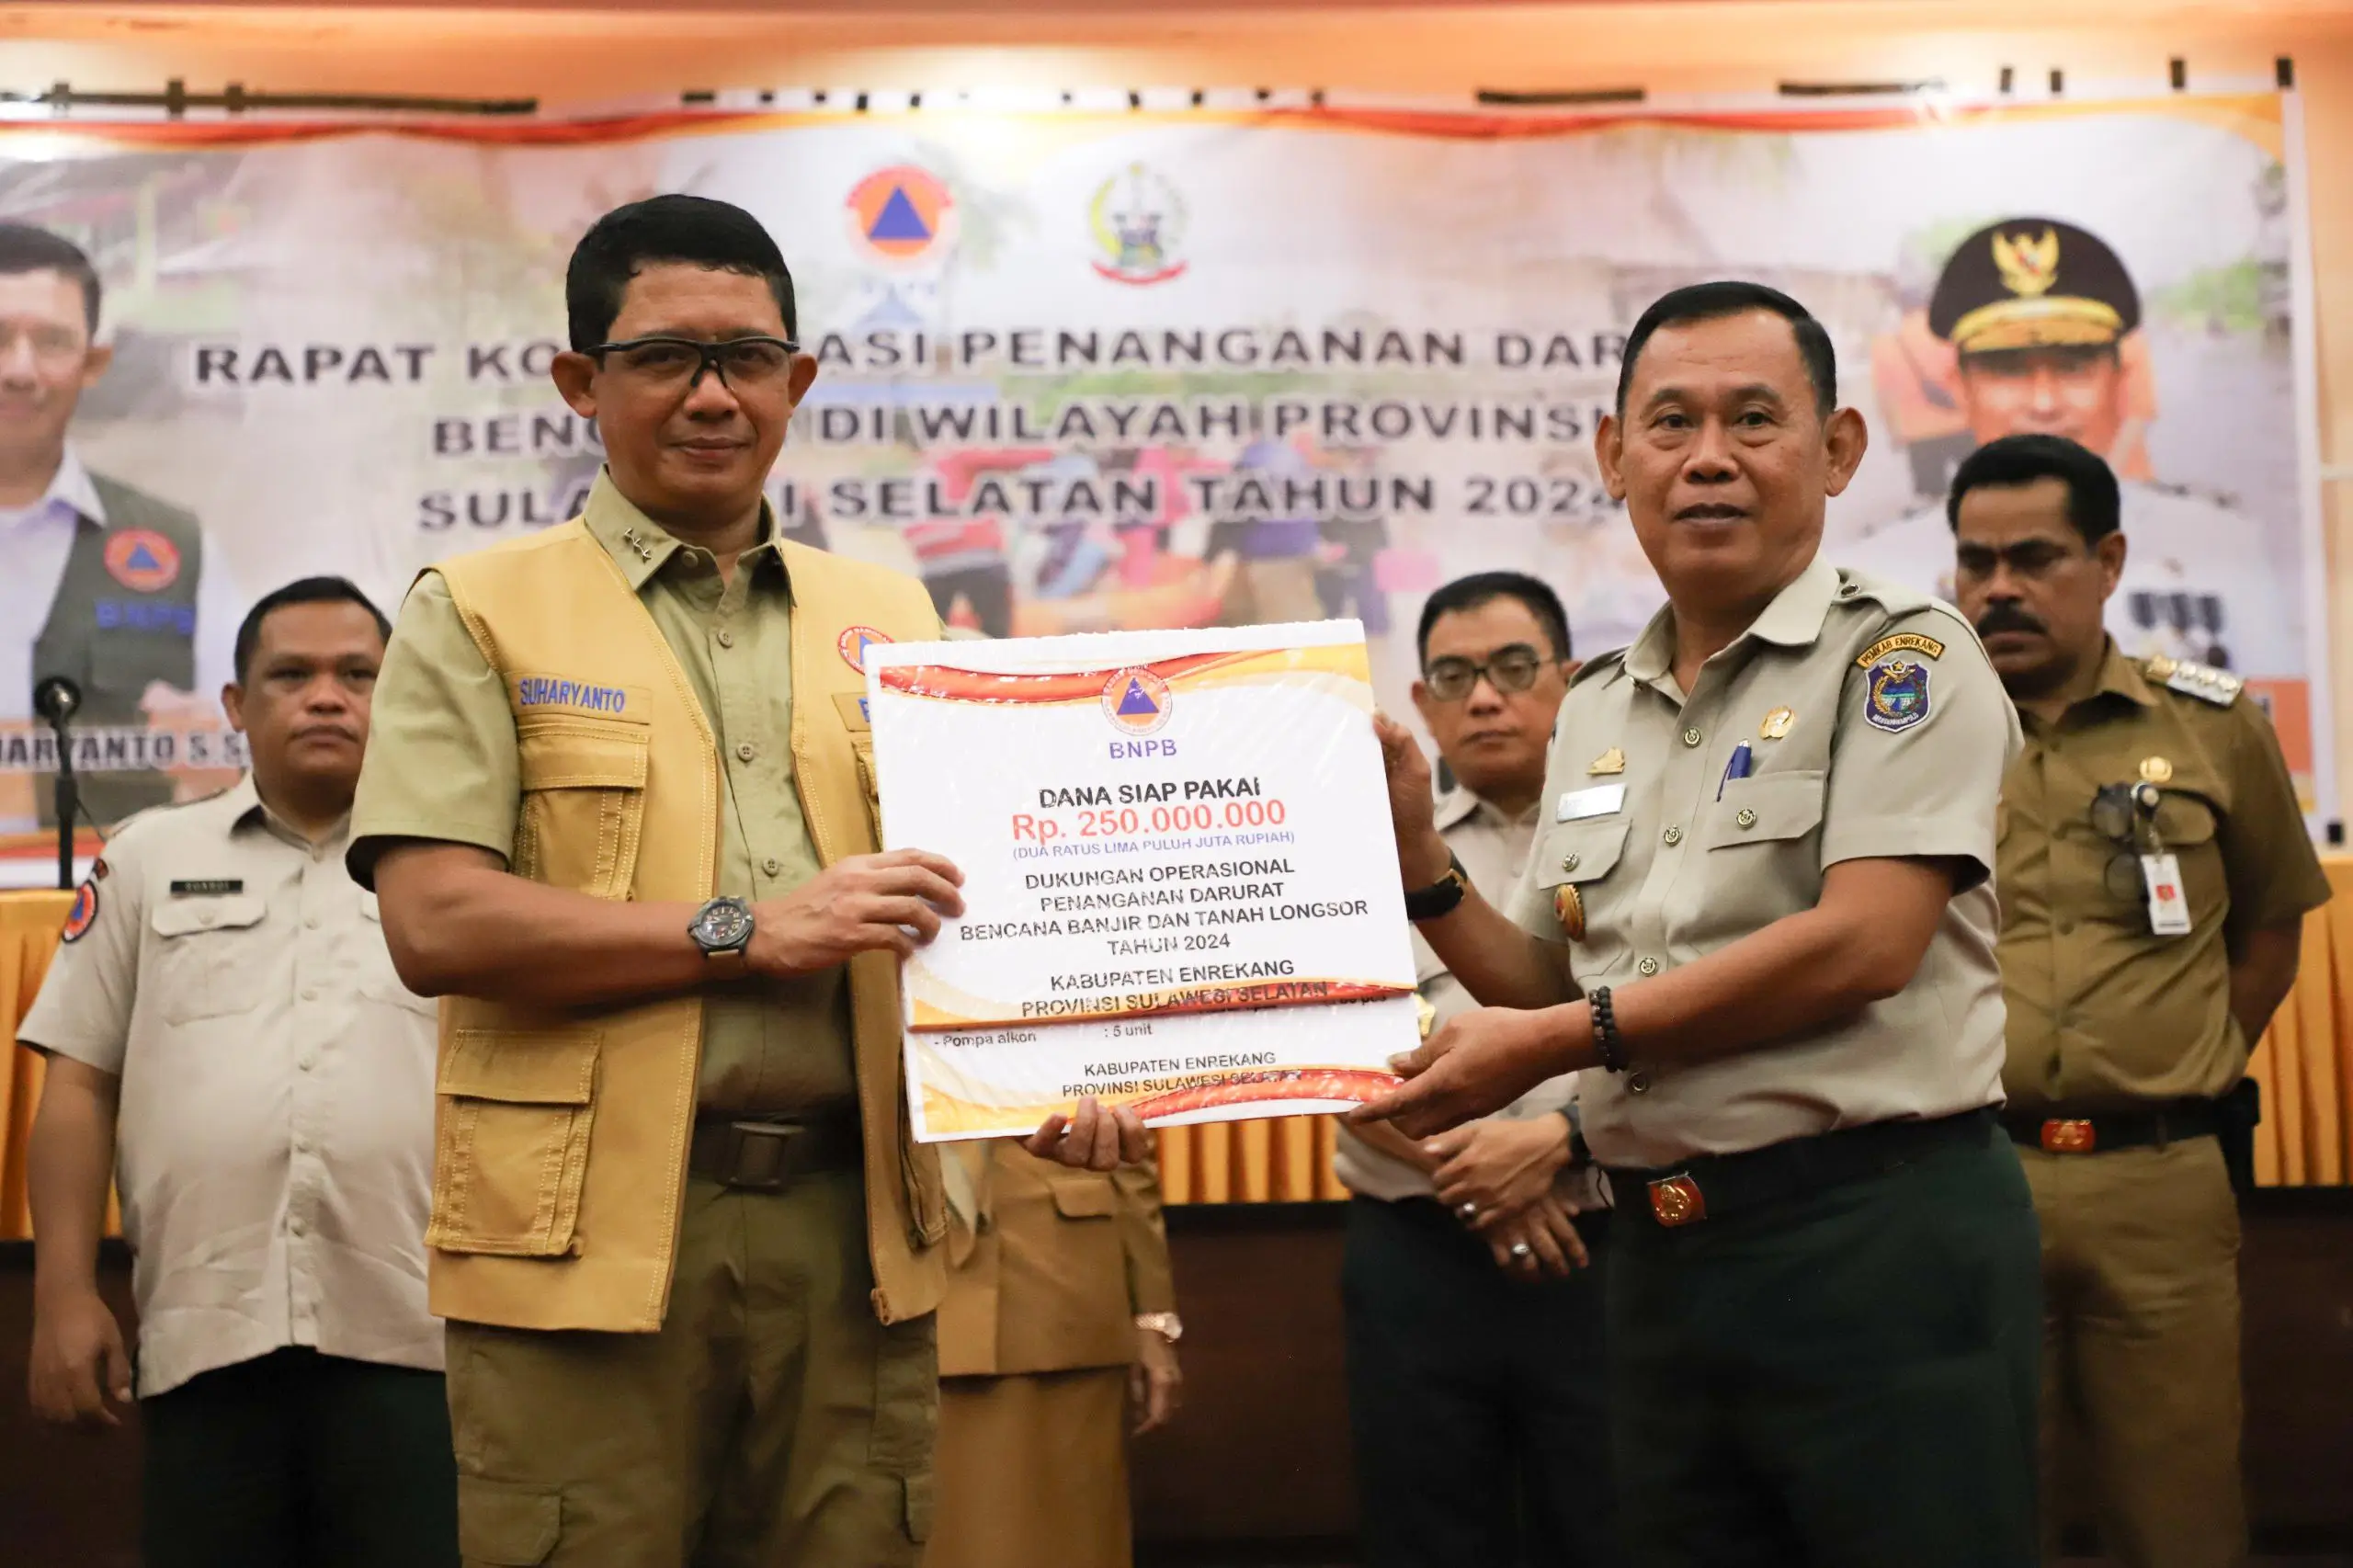 Kepala BNPB Letjen TNI Suharyanto S.Sos., M.M (kiri) memberikan bantuan secara simbolis kepada perwakilan Pemerintah Kabupaten Enrekang untuk percepatan penanganan banjir dan tanah longsor, Senin (6/5).